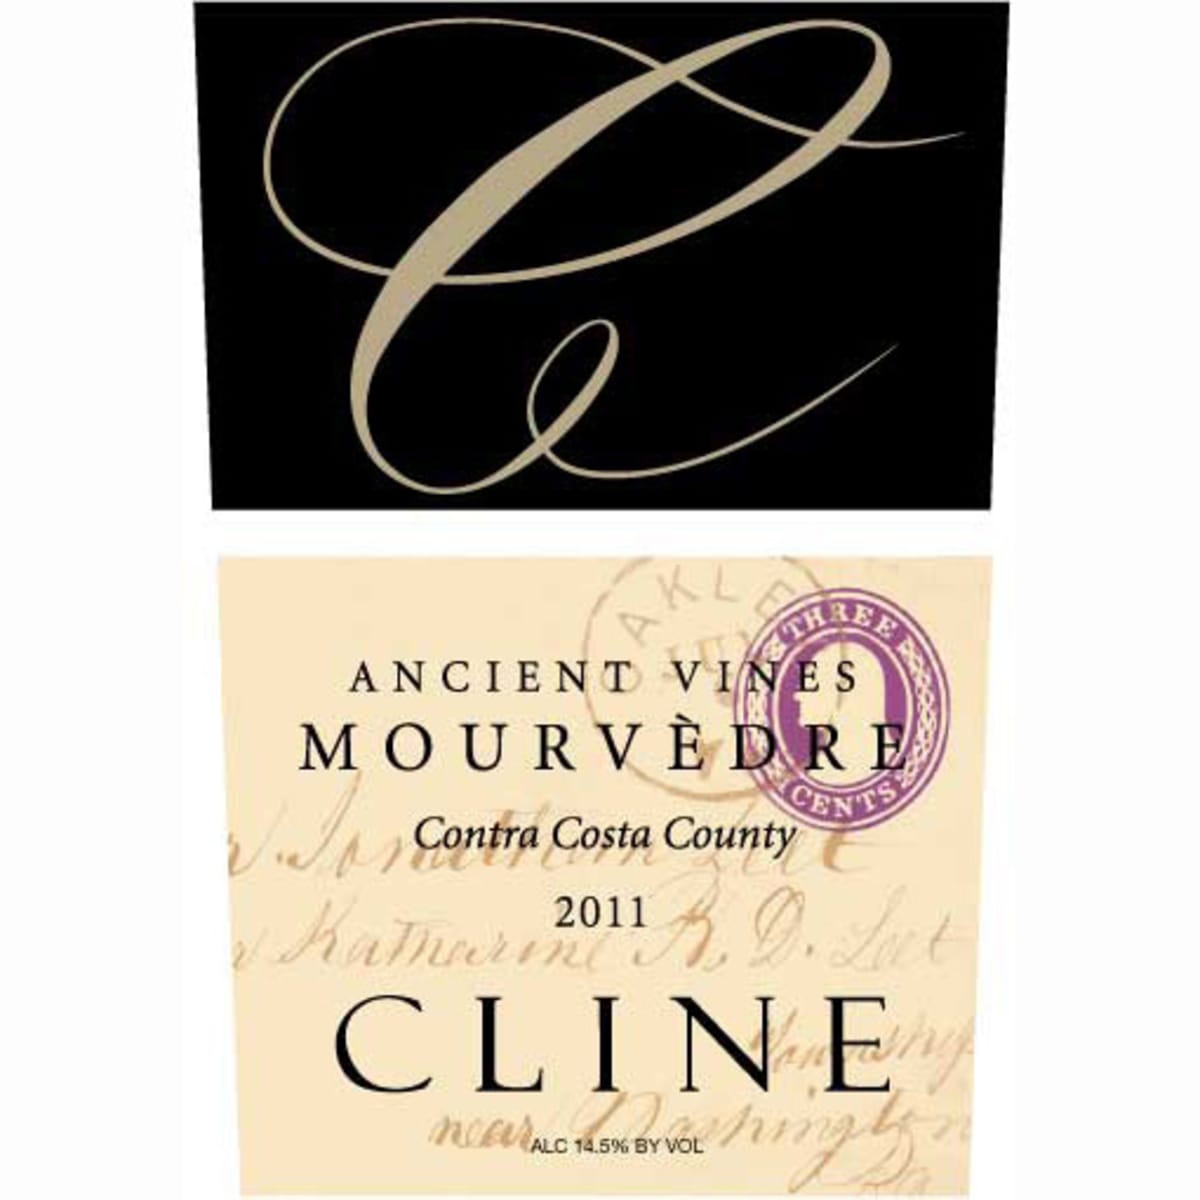 Cline Ancient Vines Mourvedre 2011 Front Label